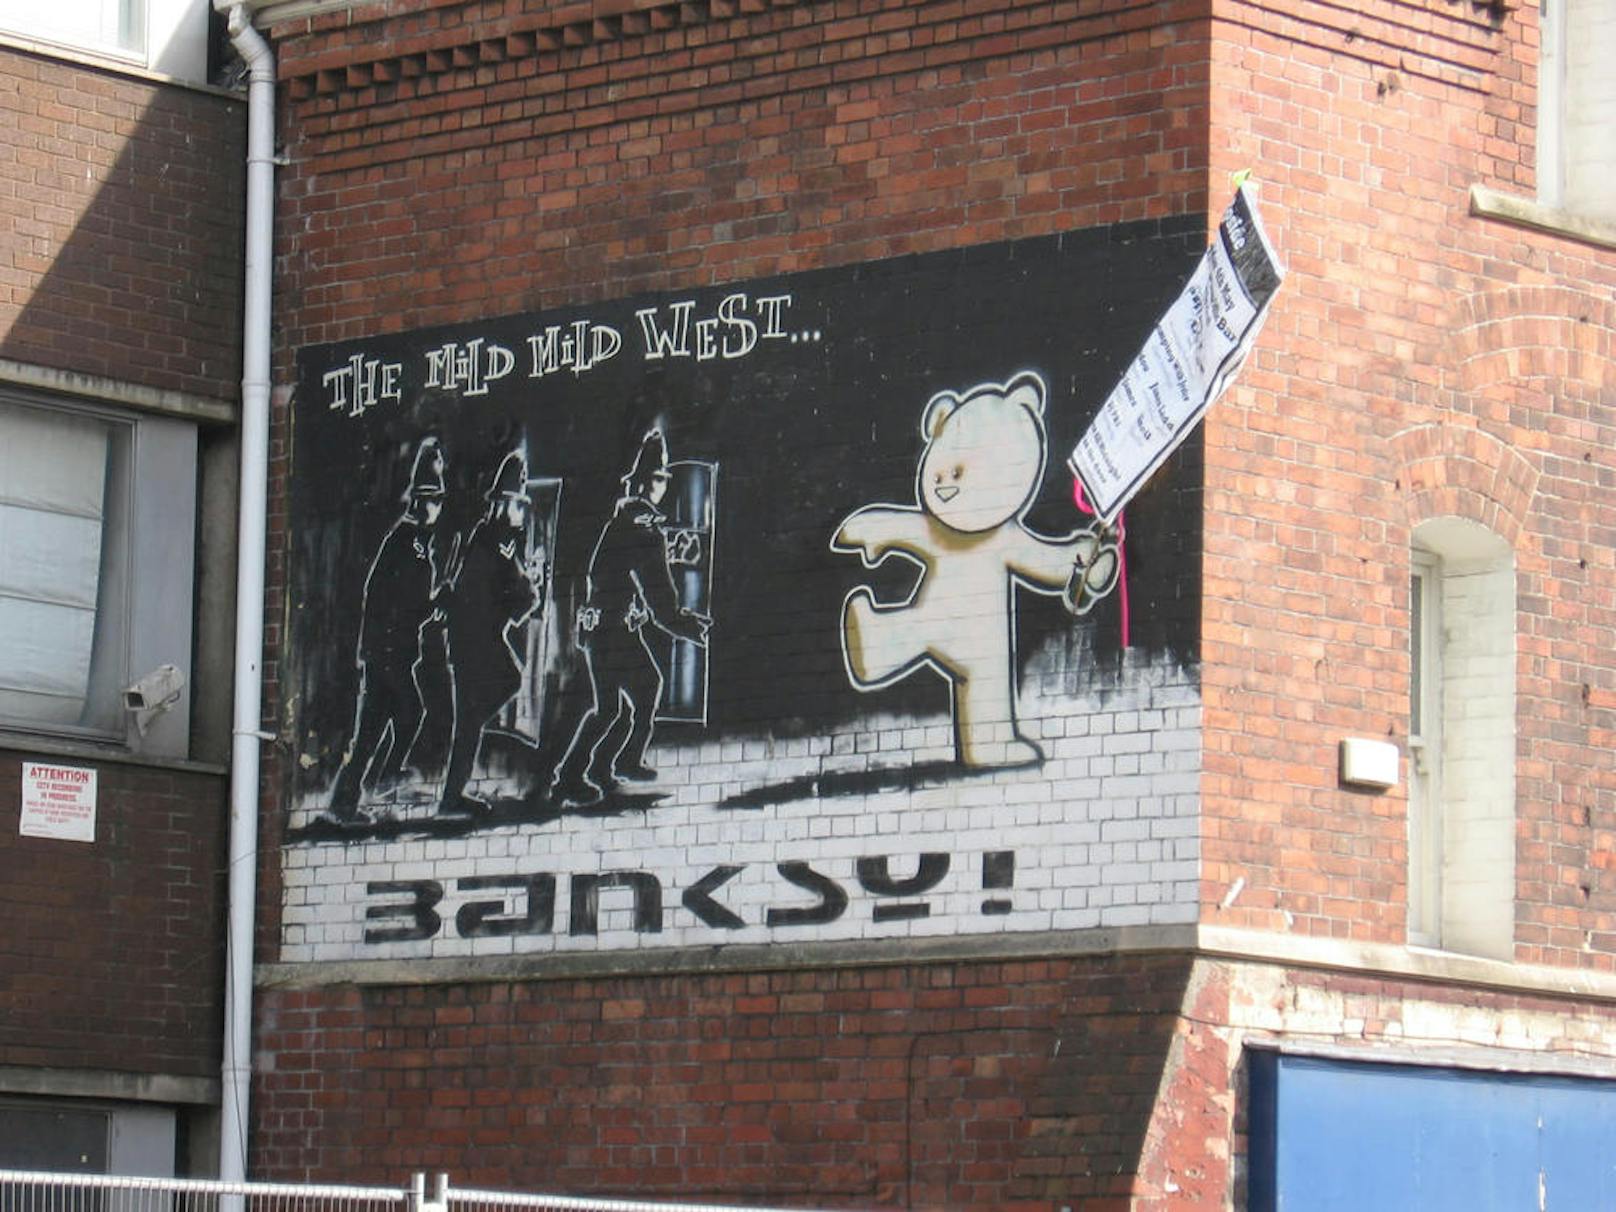 <b>BRISTOL, ENGLAND</b><br>
Auch ein Werk von Banksy. Der Superstar der Street Art versucht, seinen Namen geheim zu halten, was seinem Schaffen eine mysteriöse Facette verleiht.